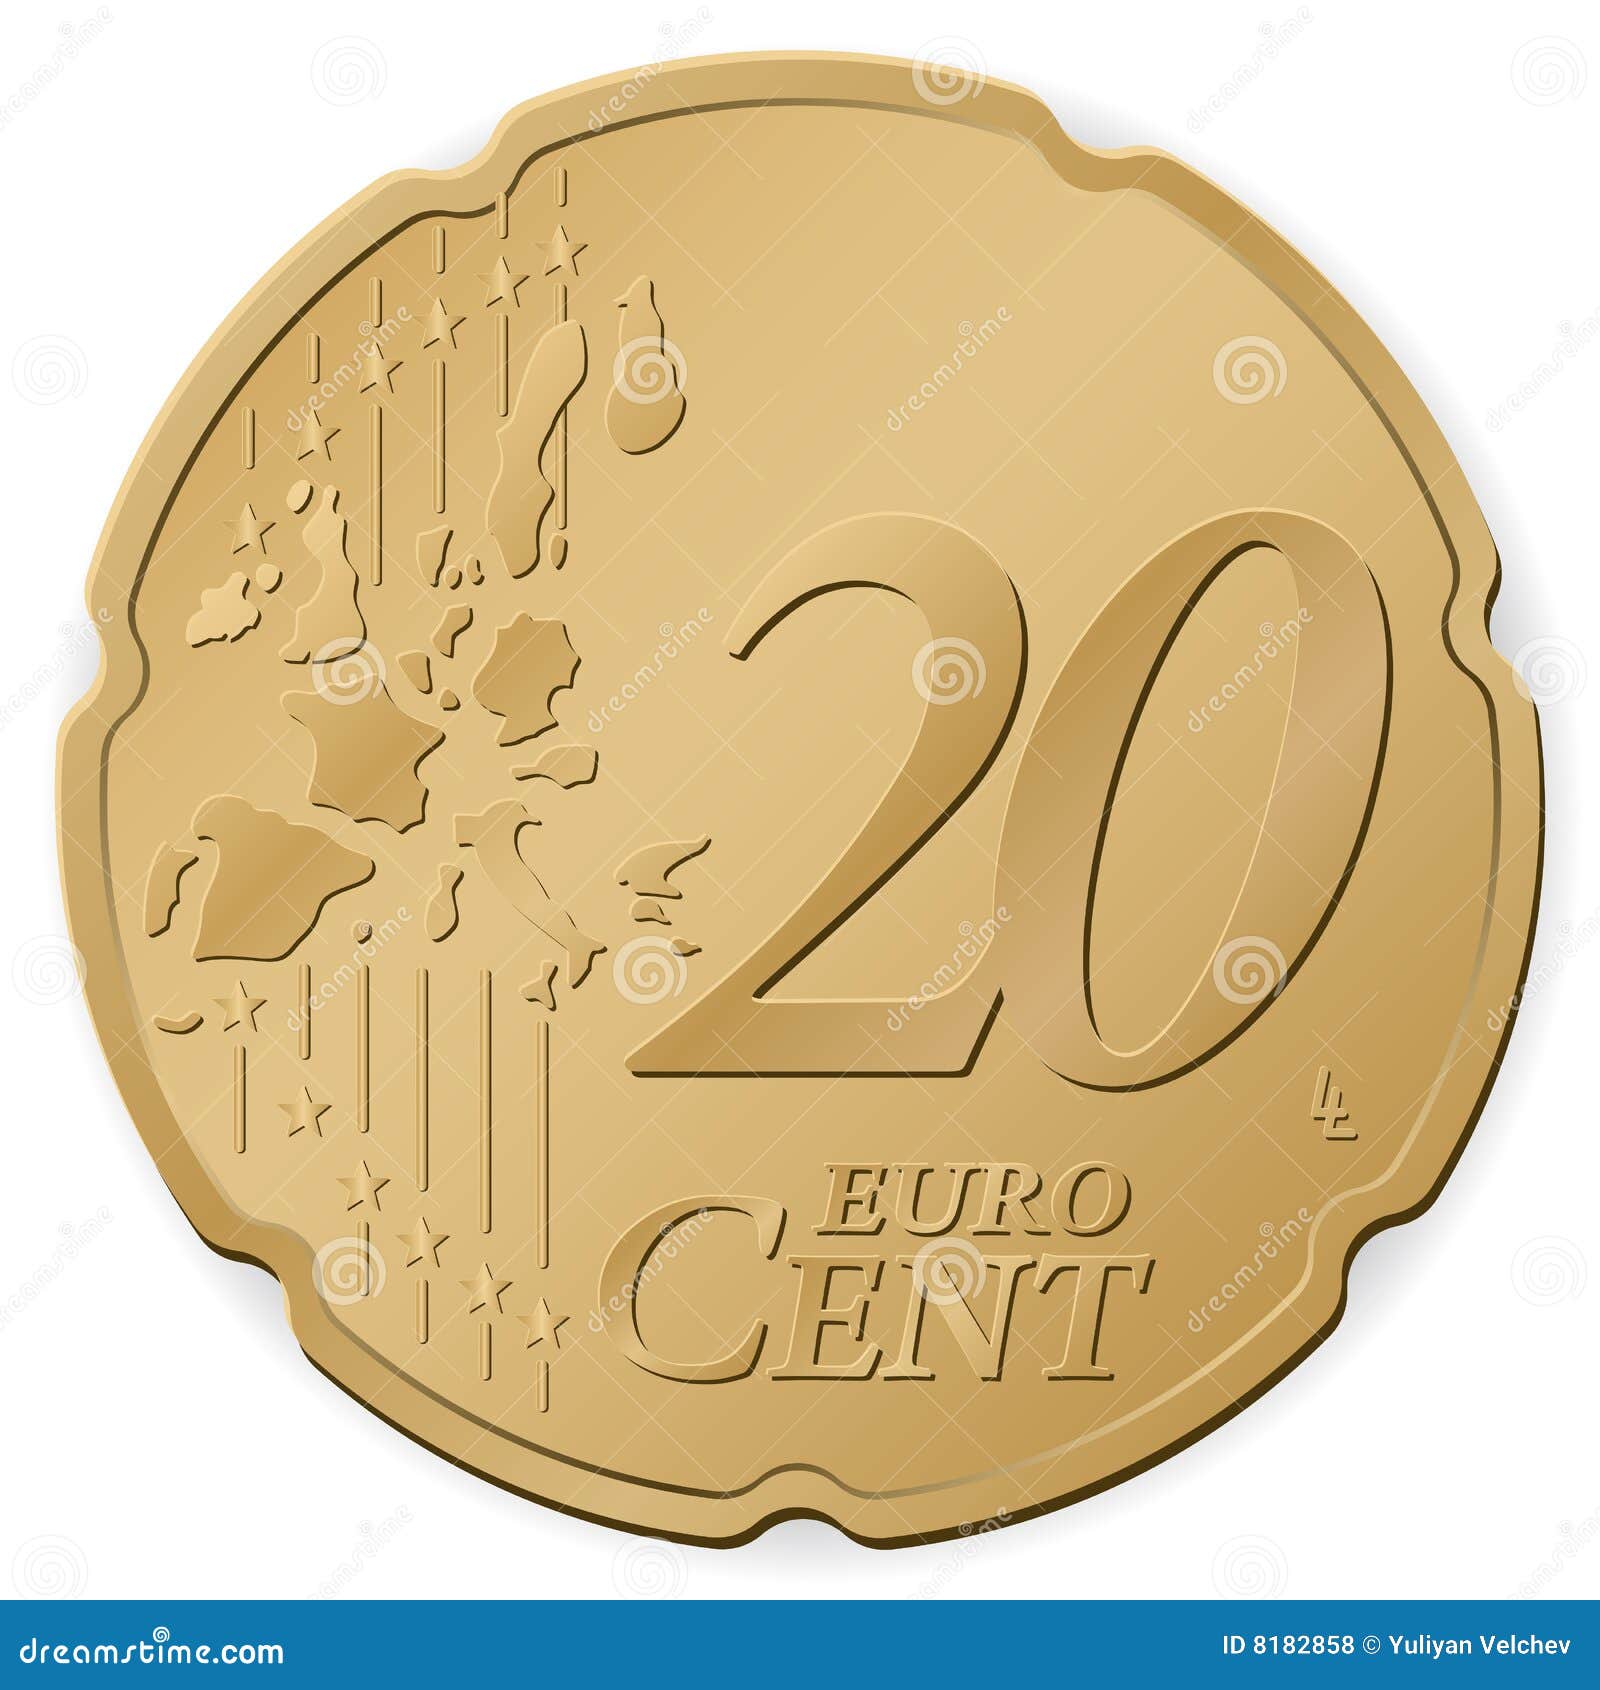 西班牙 新版8枚欧元硬币 中邮网[集邮/钱币/邮票/金银币/收藏资讯]收藏品商城